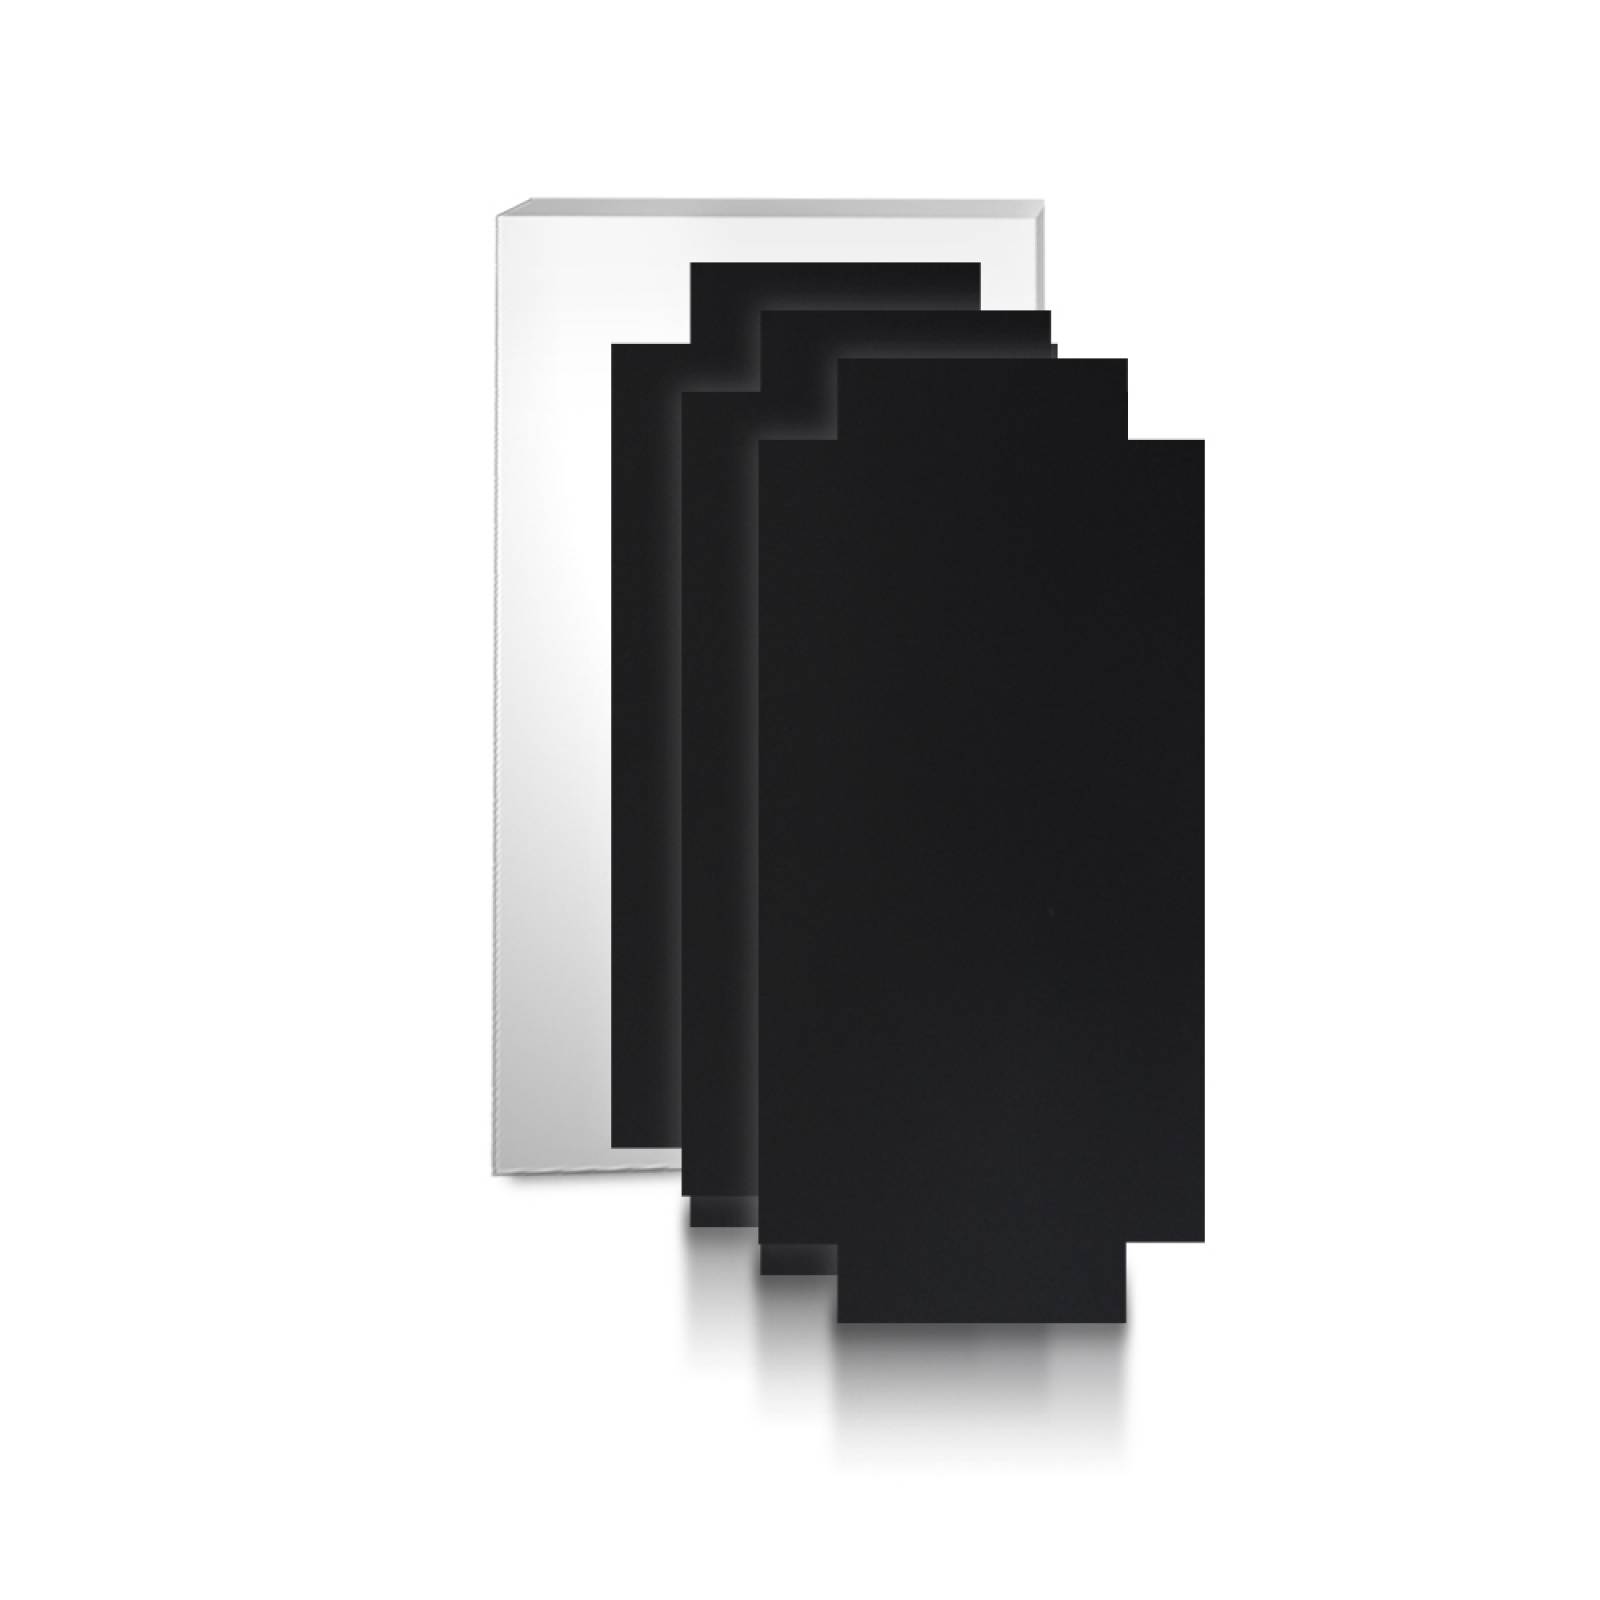 Aislante Cerámico Protector Térmico para Pared de 75 x 35 cm Negro, Paquete 3 Piezas, Mod: 6PTPP3Ne